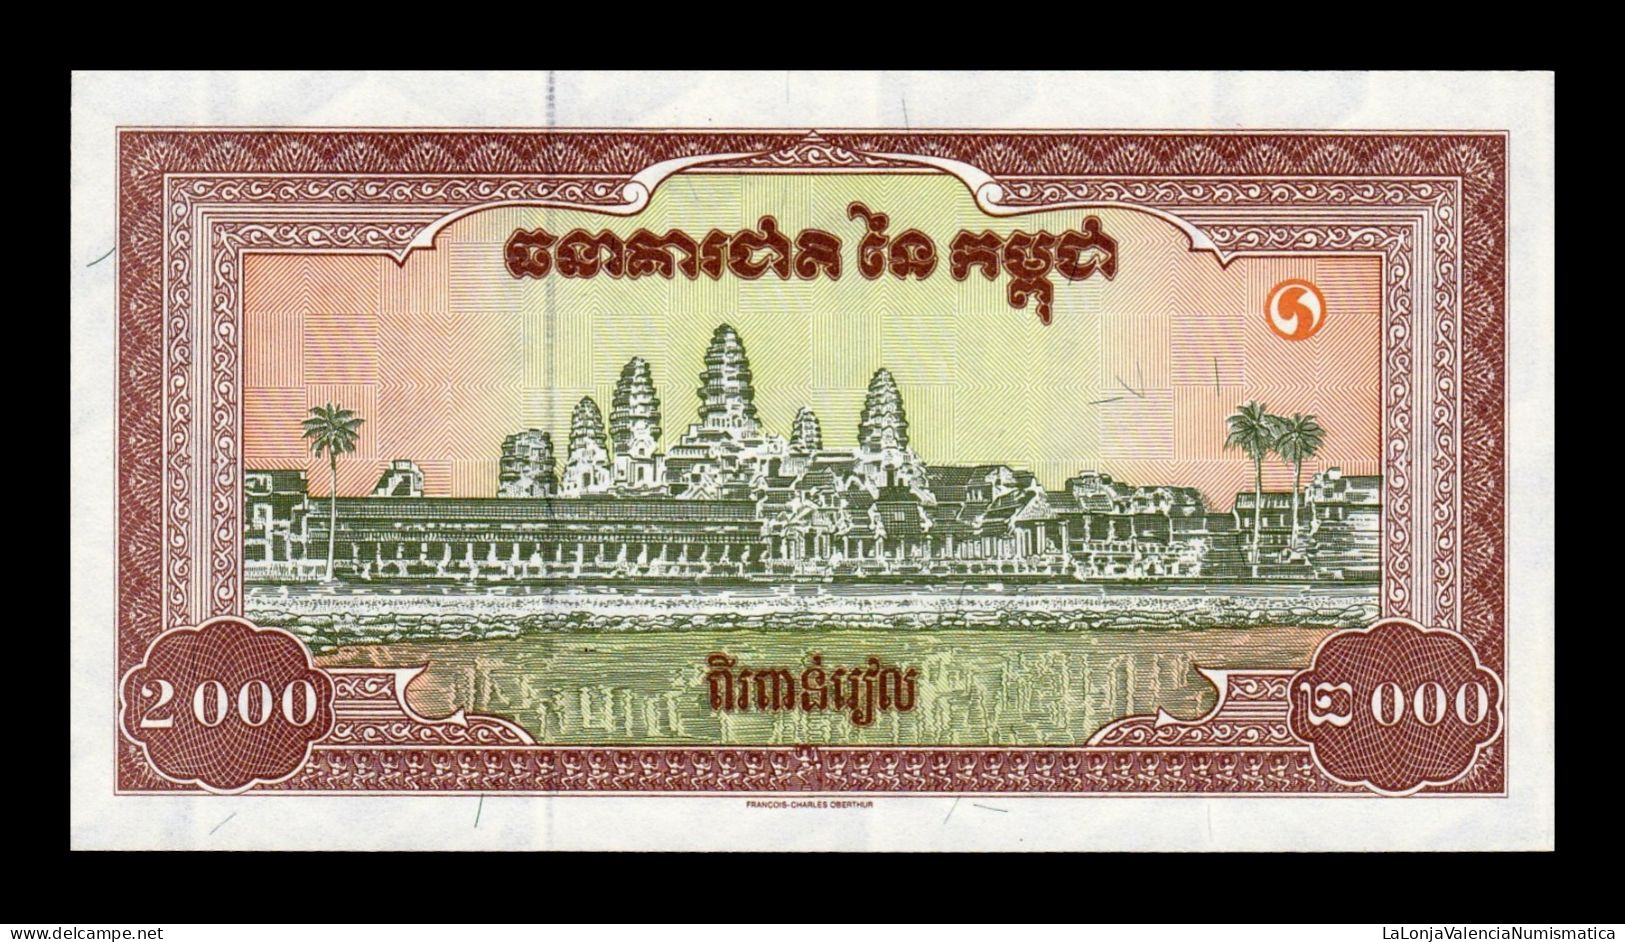 Camboya Cambodia 2000 Riels 1995 Pick 45 Sc Unc - Cambodia